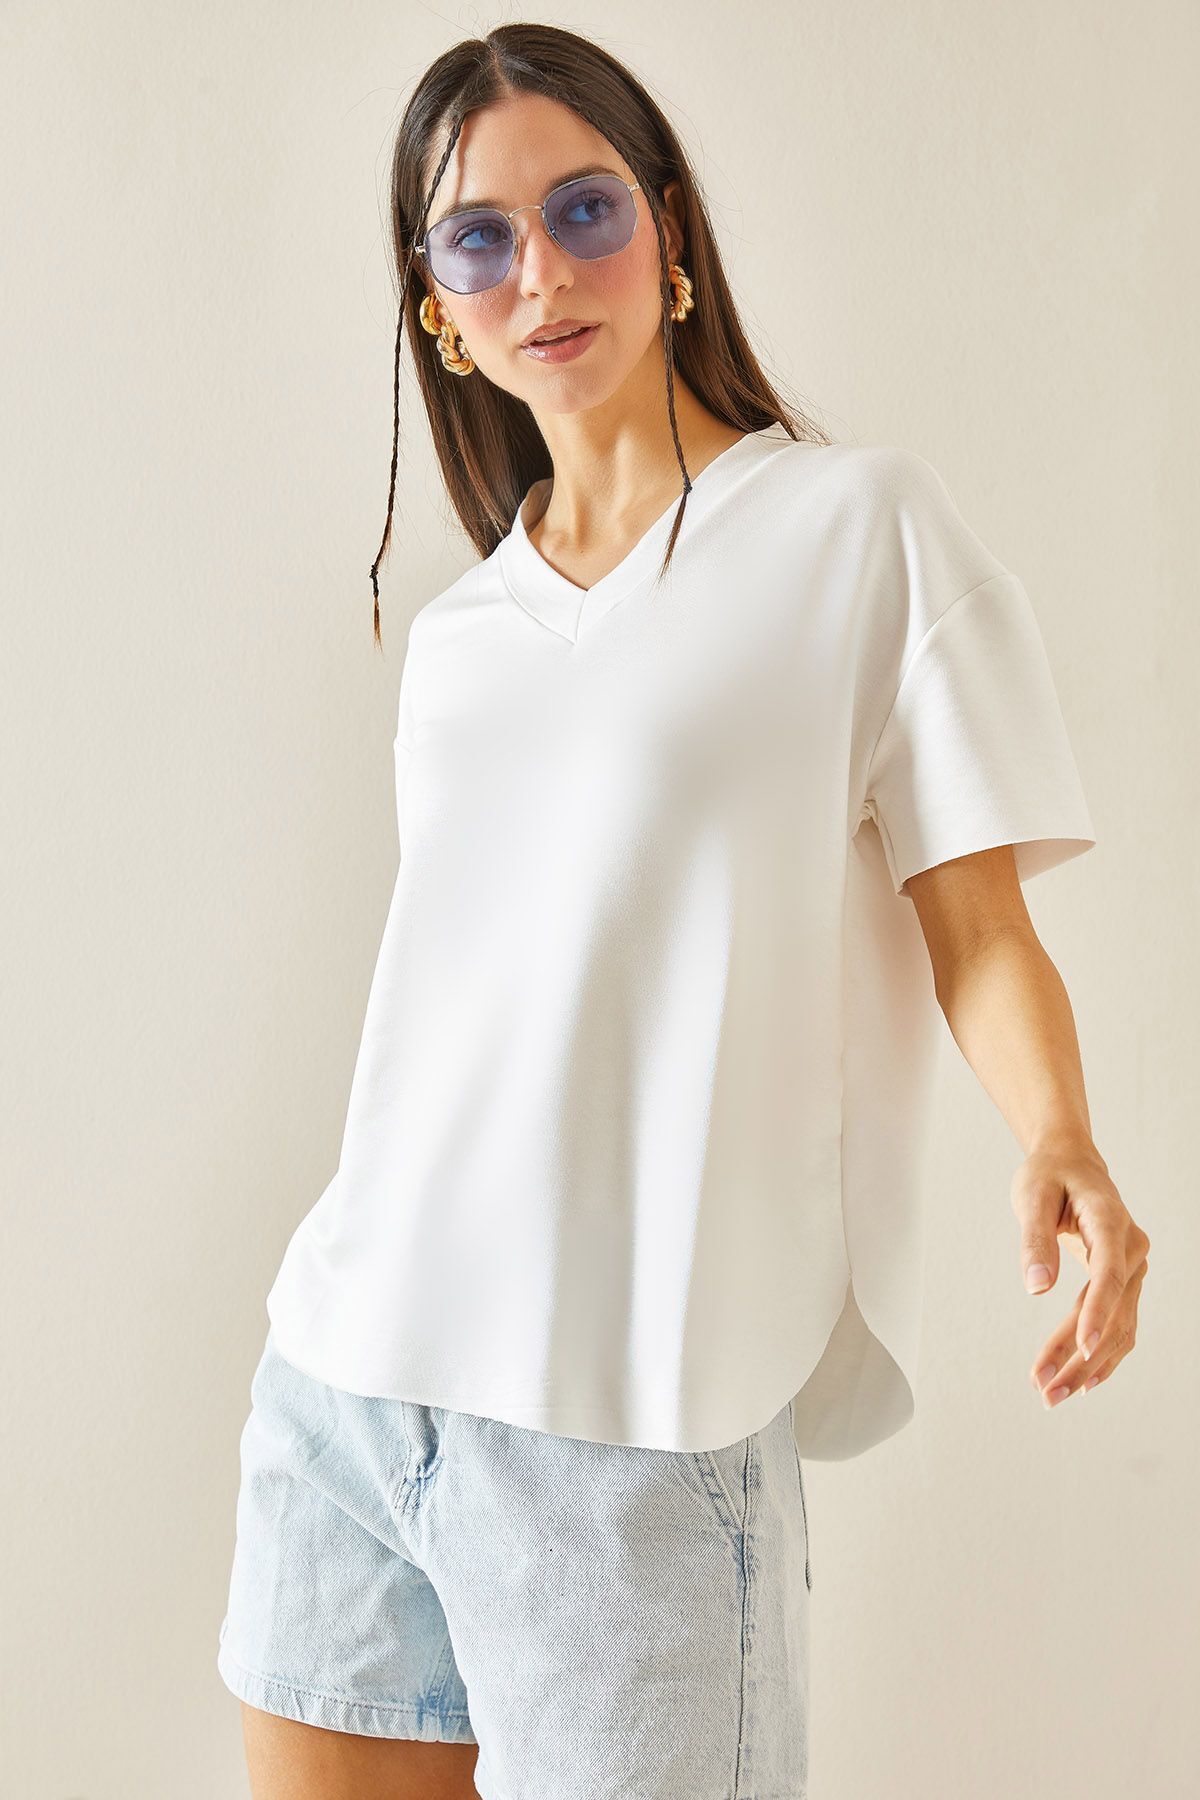 XHAN Beyaz V Yaka Lazer Kesim T-Shirt 5YXK1-48401-01